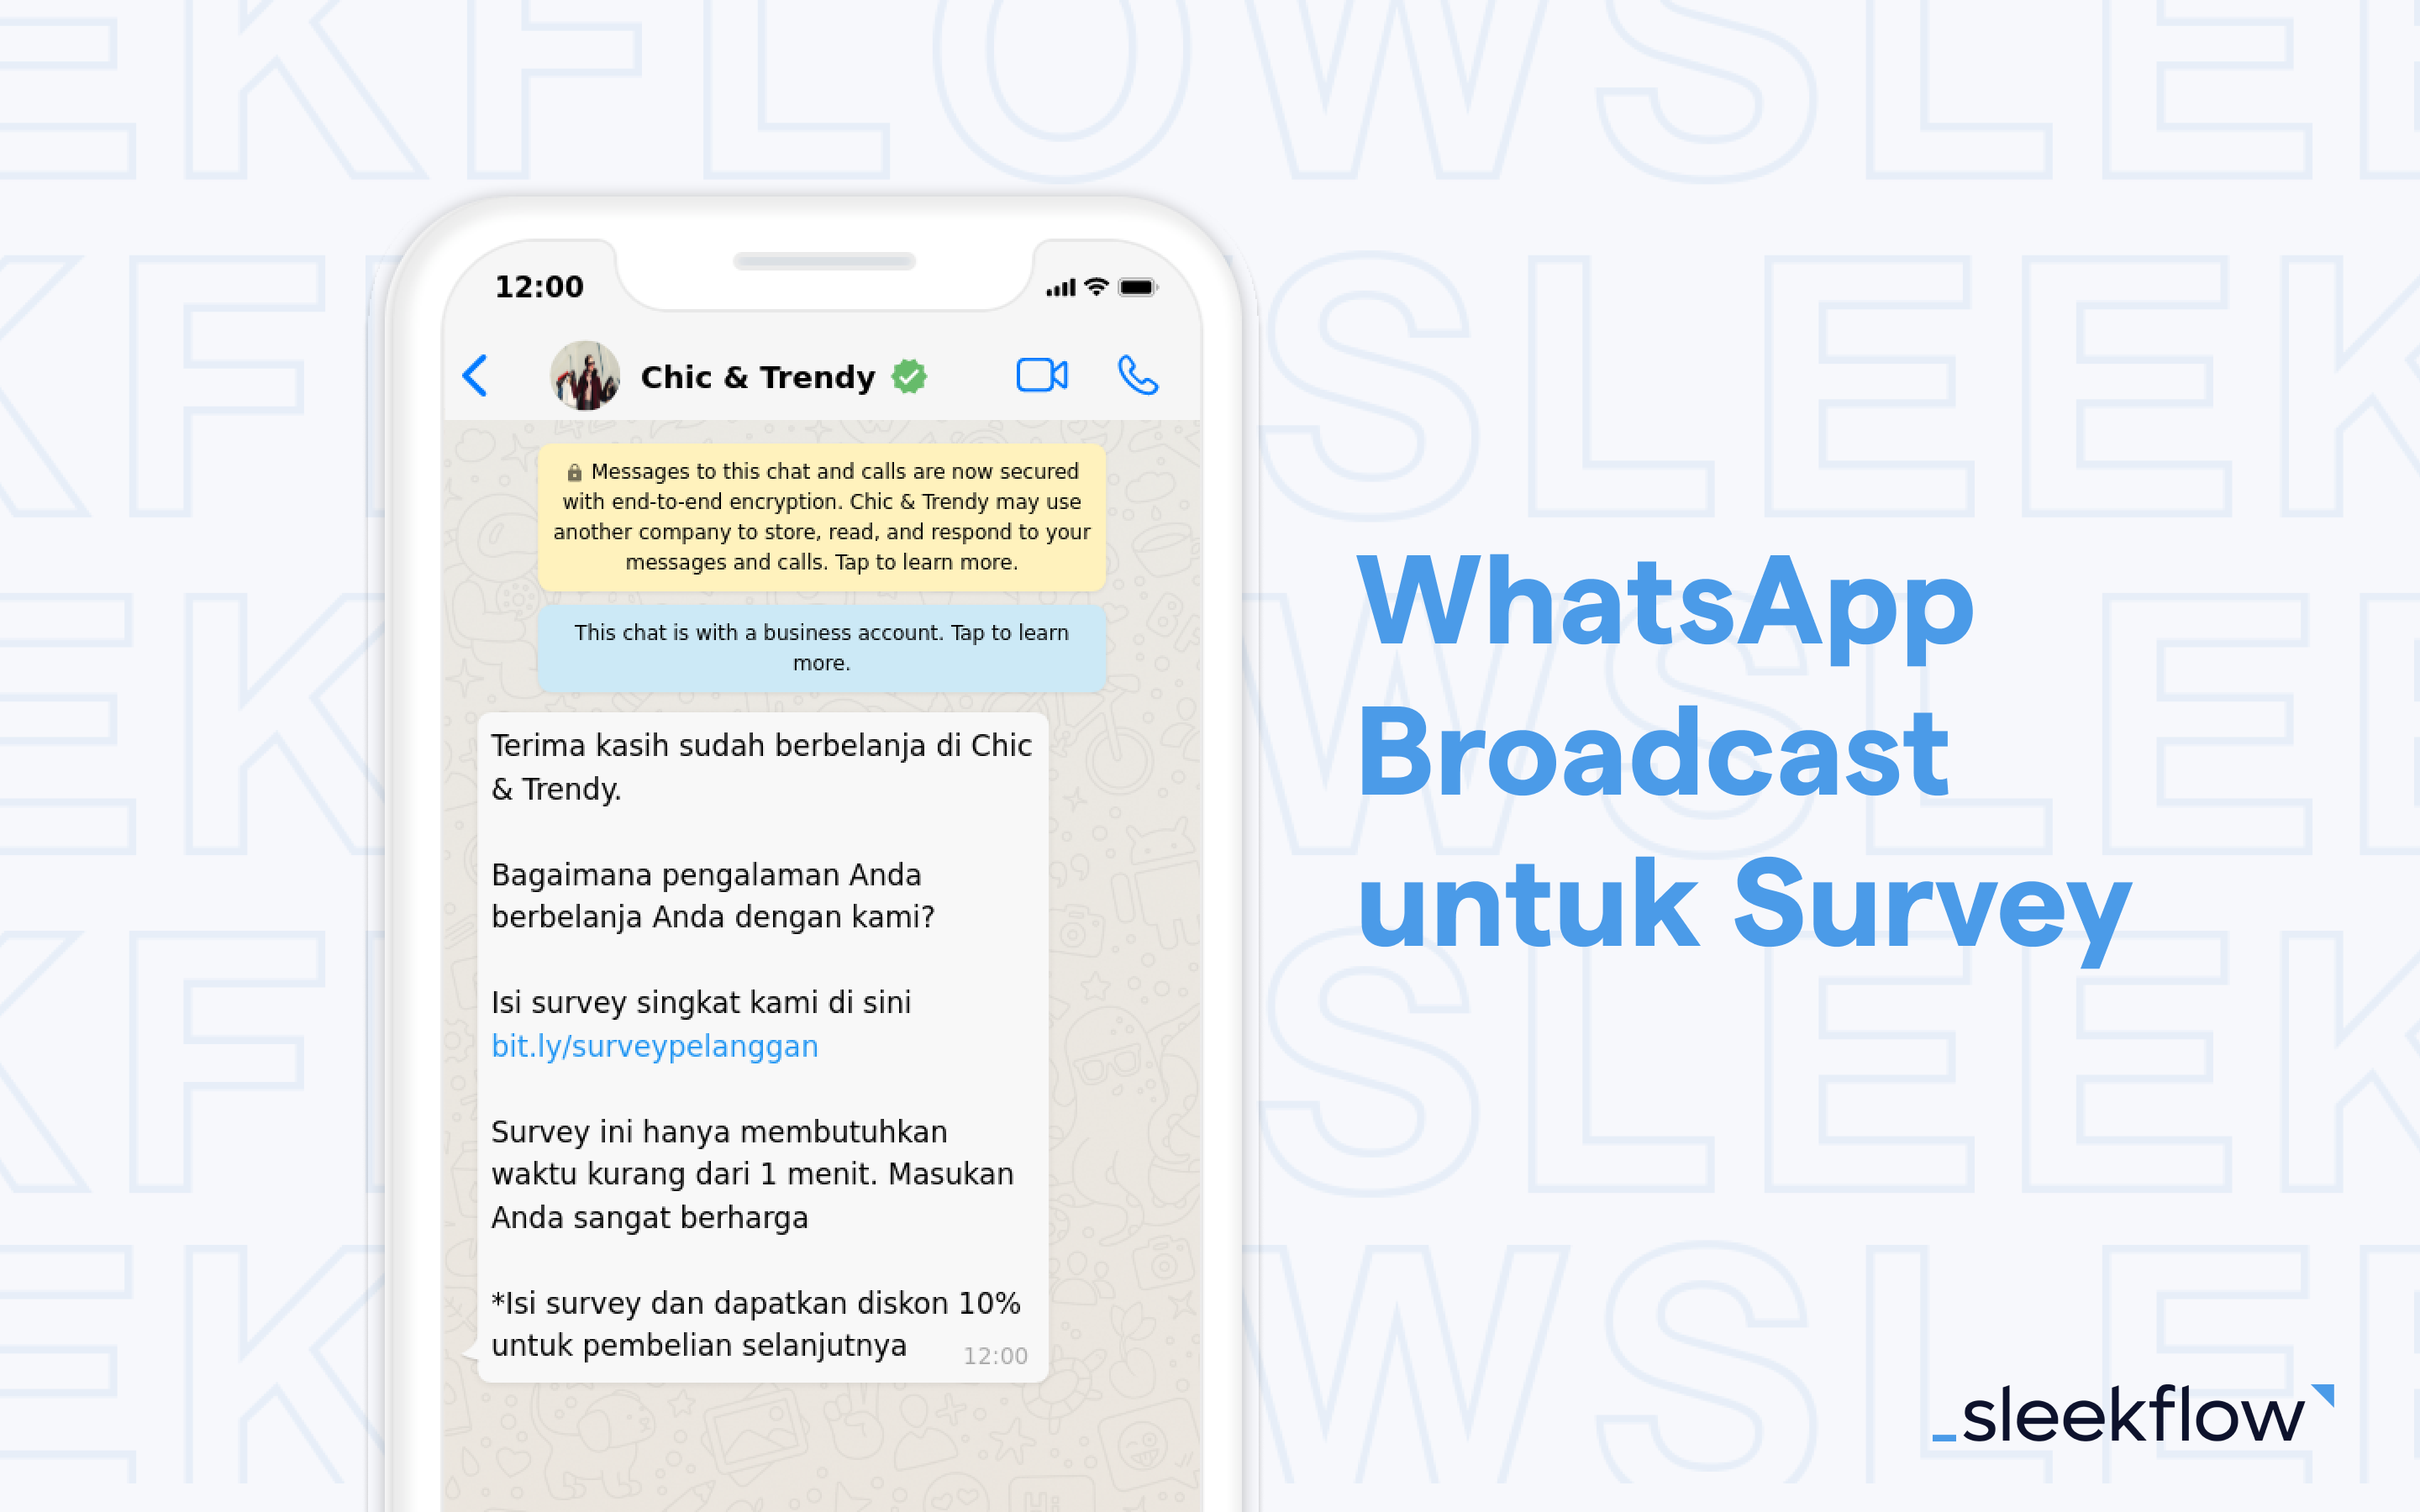 WhatsApp Broadcast untuk Survey Pelanggan